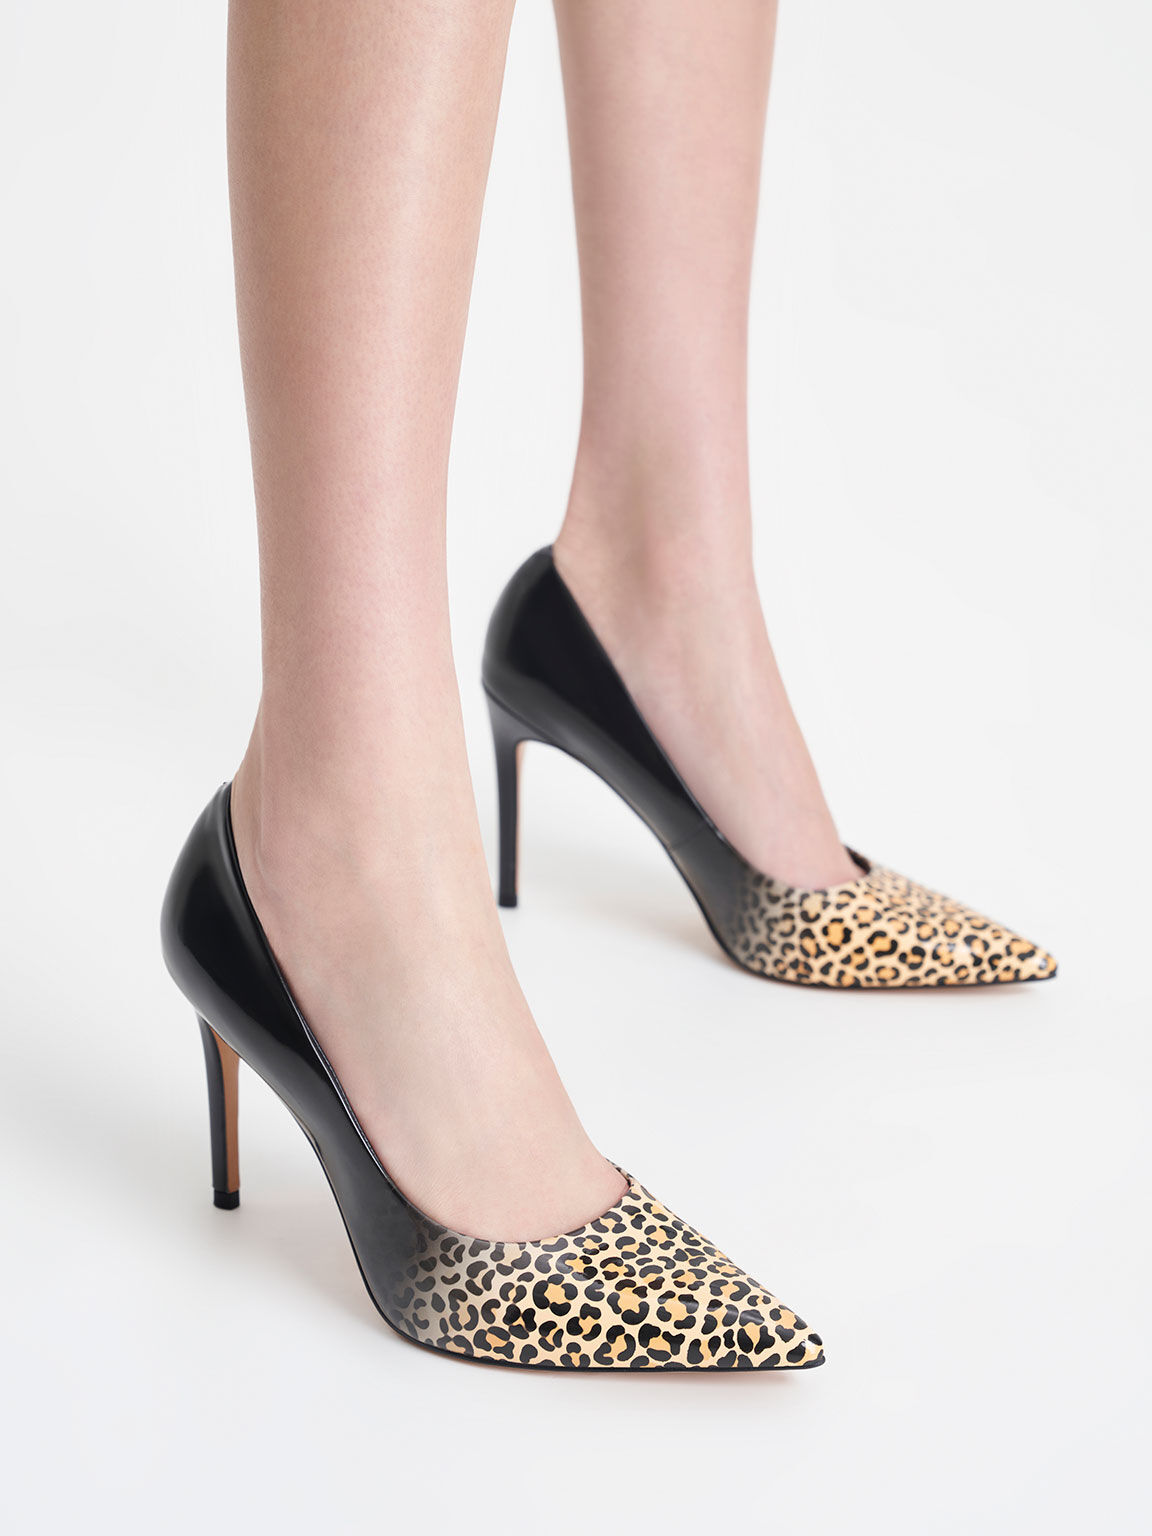 Sepatu Pumps Patent Leopard Print Stiletto Heel, Multi, hi-res